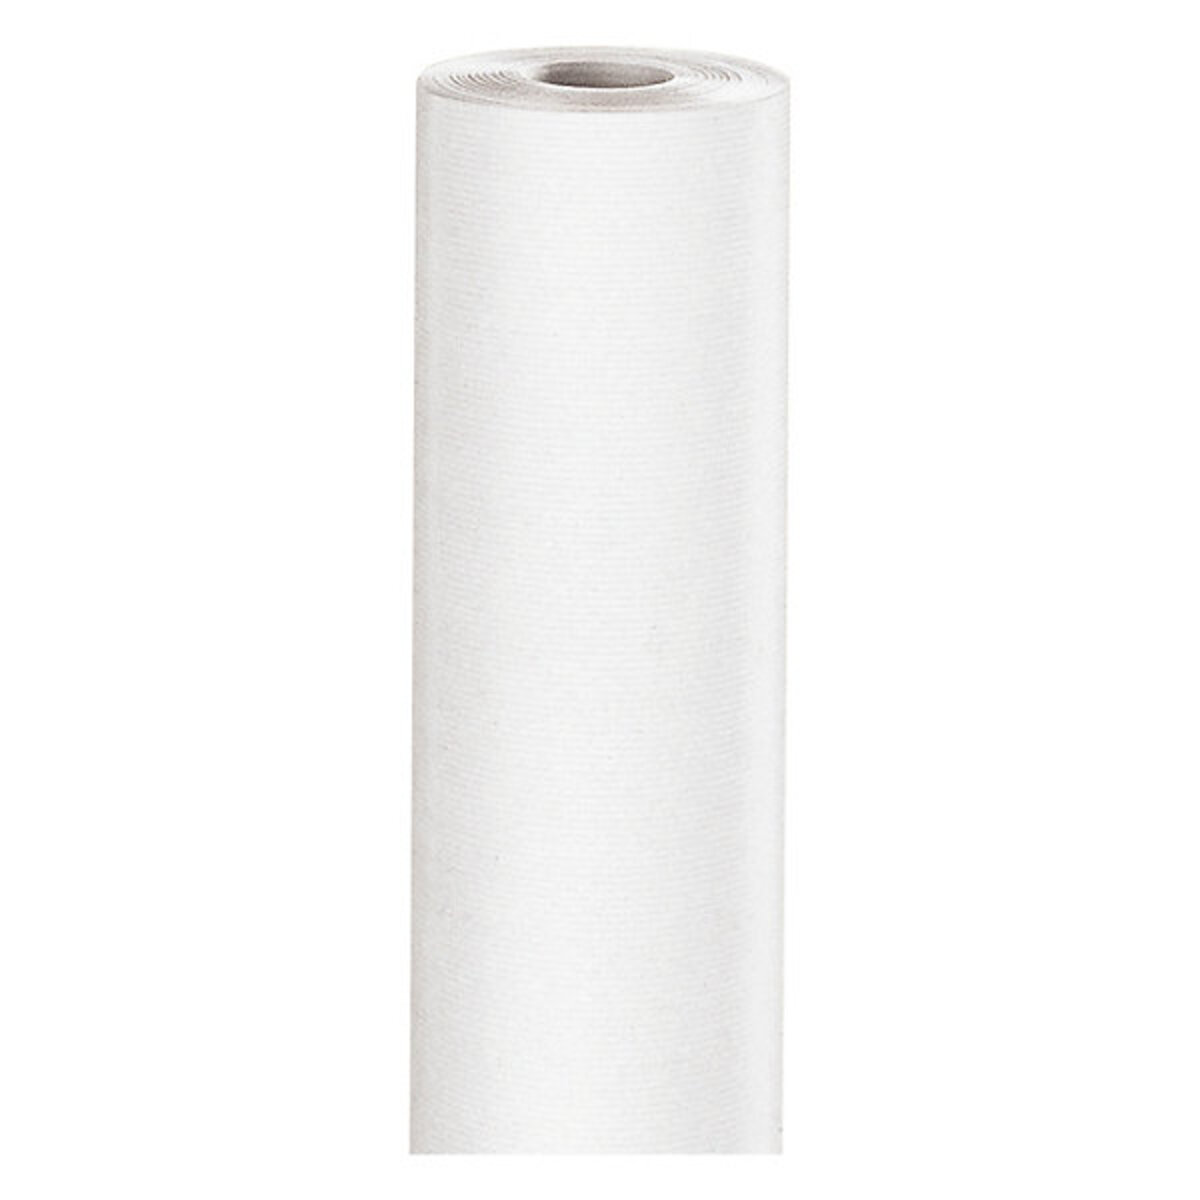 Papier kraft blanc en rouleau 100 m x50 cm - La Poste